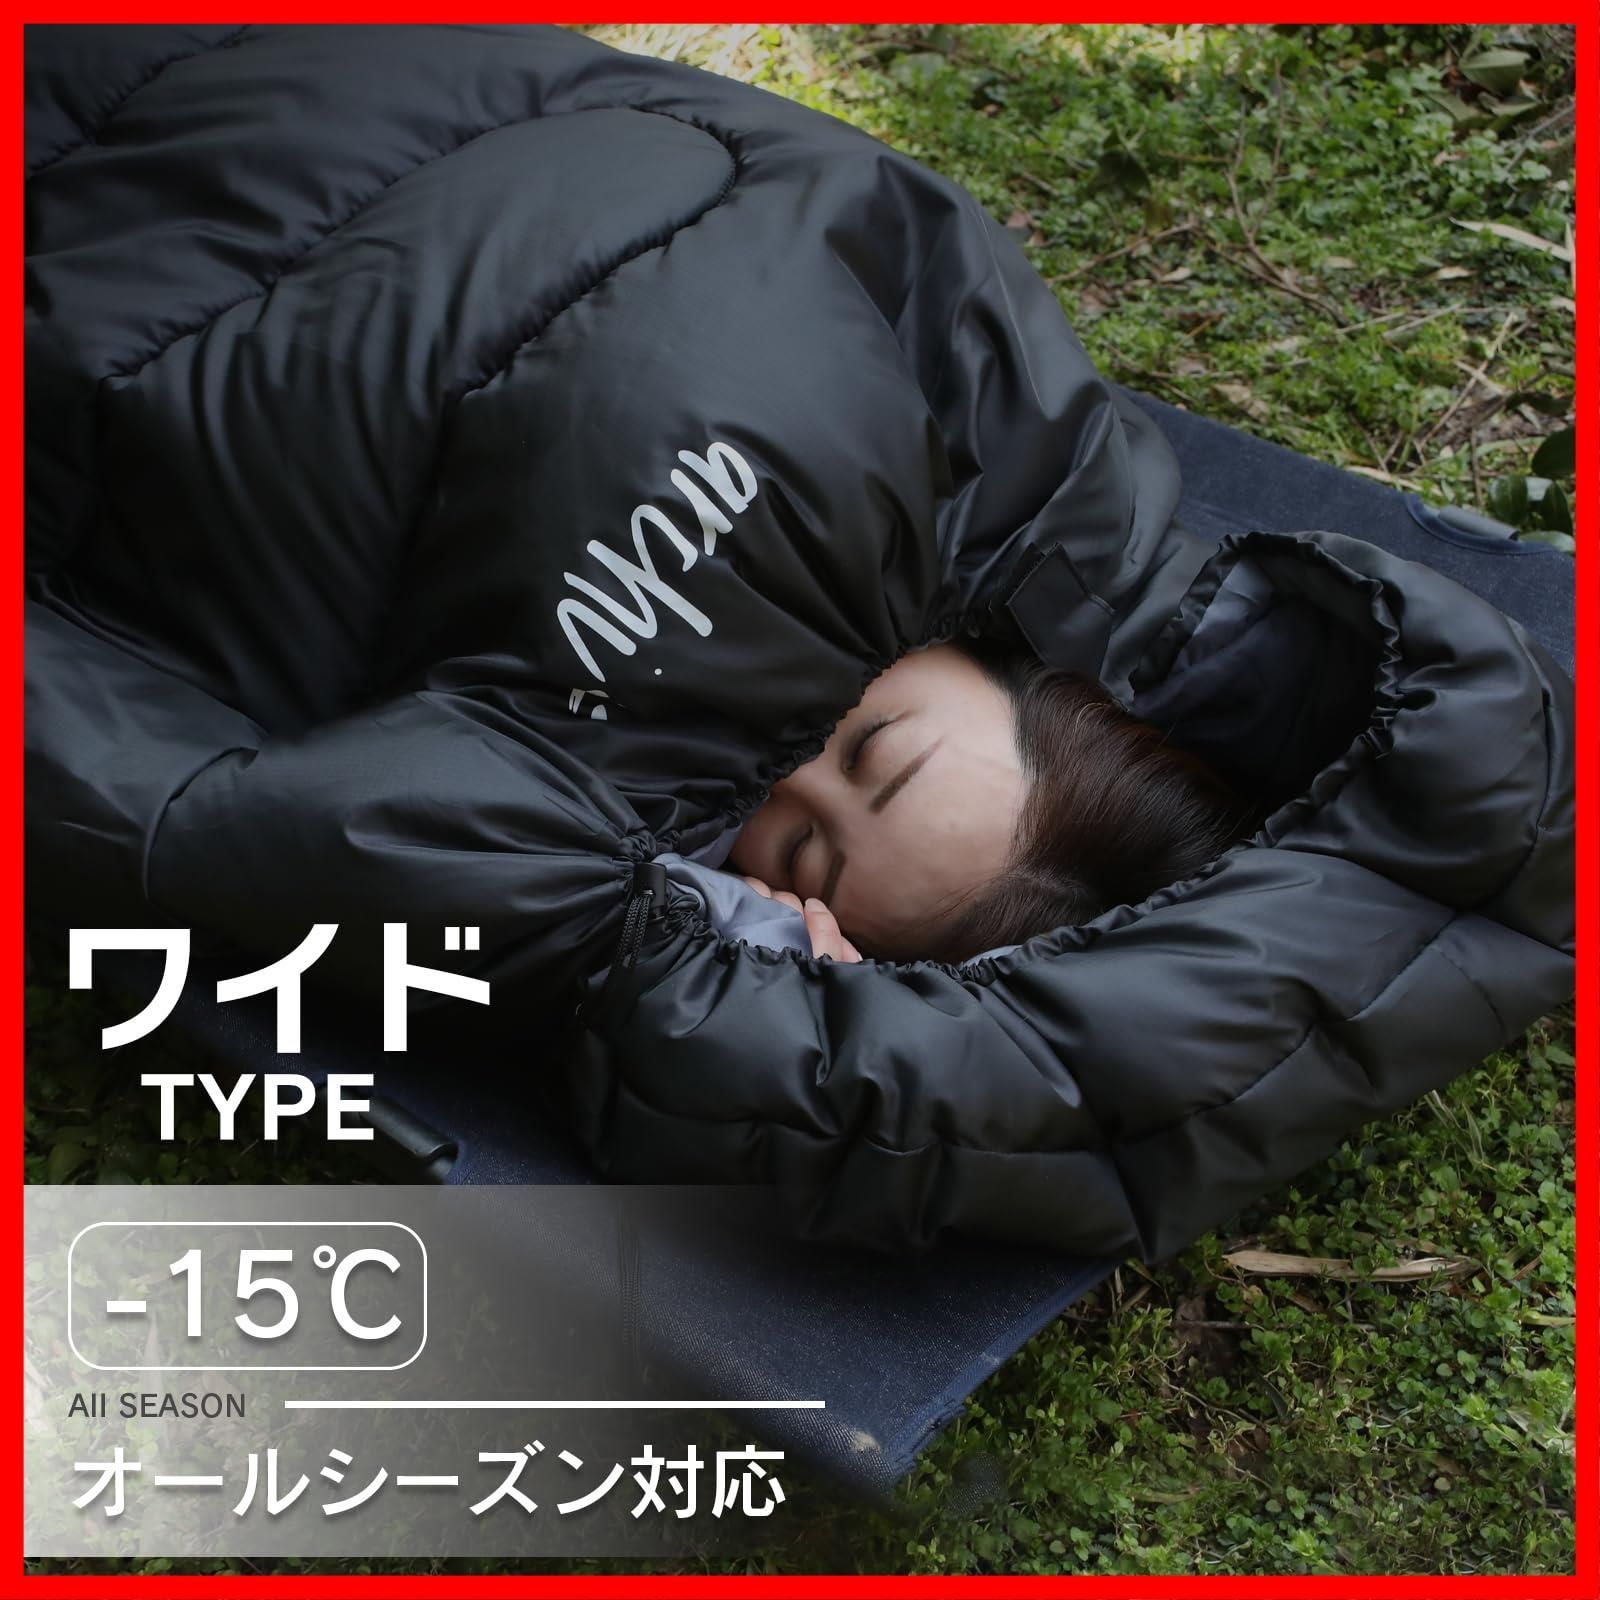 【ラスト1点】寝袋 ワイドサイズ シュラフ 封筒型 210T 抗菌仕様 archi(アーチ) 車中泊 防災 最低使用温度 -15℃